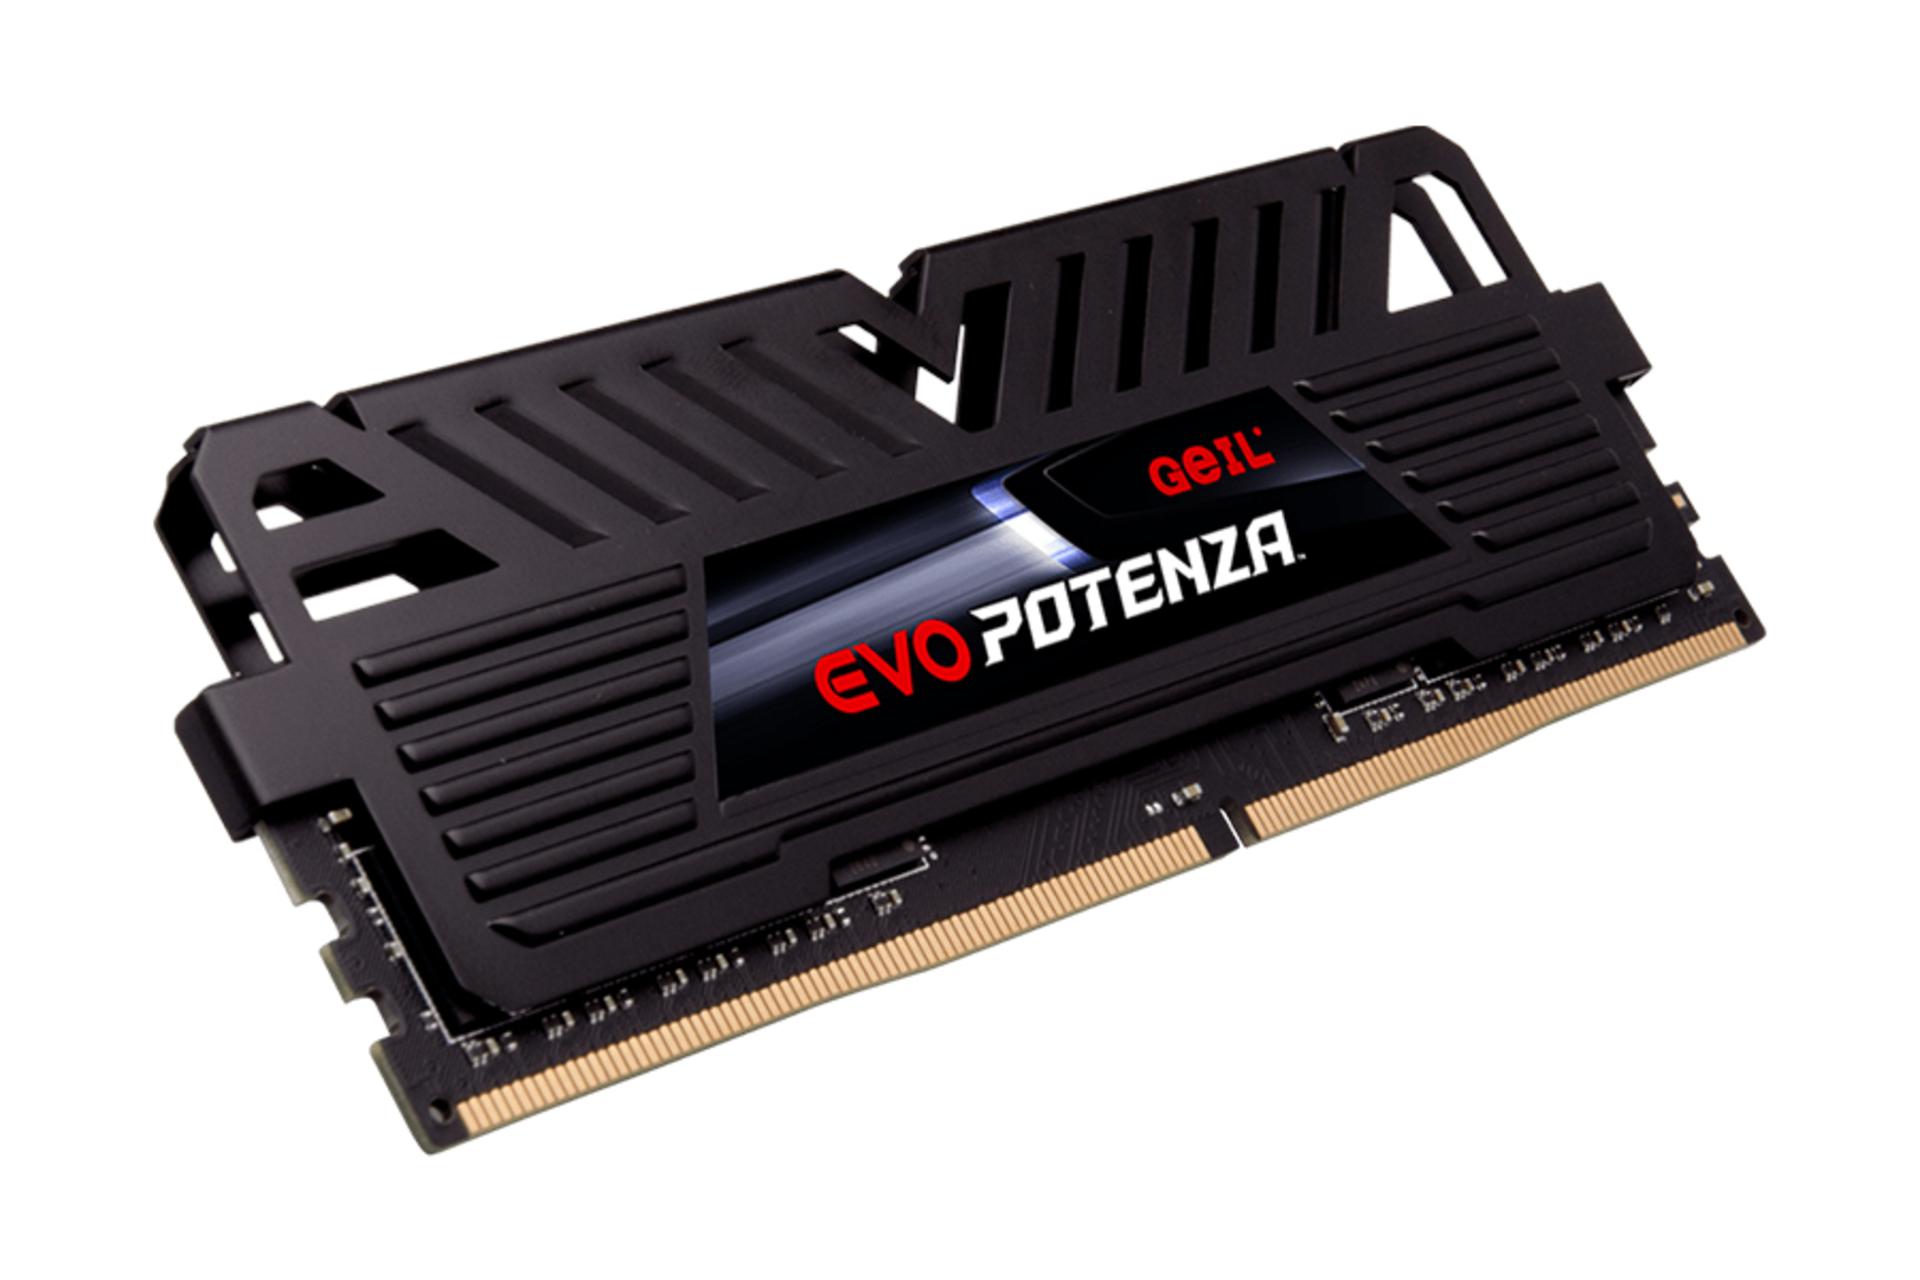 نمای کناری رم گیل EVO Potenza ظرفیت 8 گیگابایت از نوع DDR4-3000